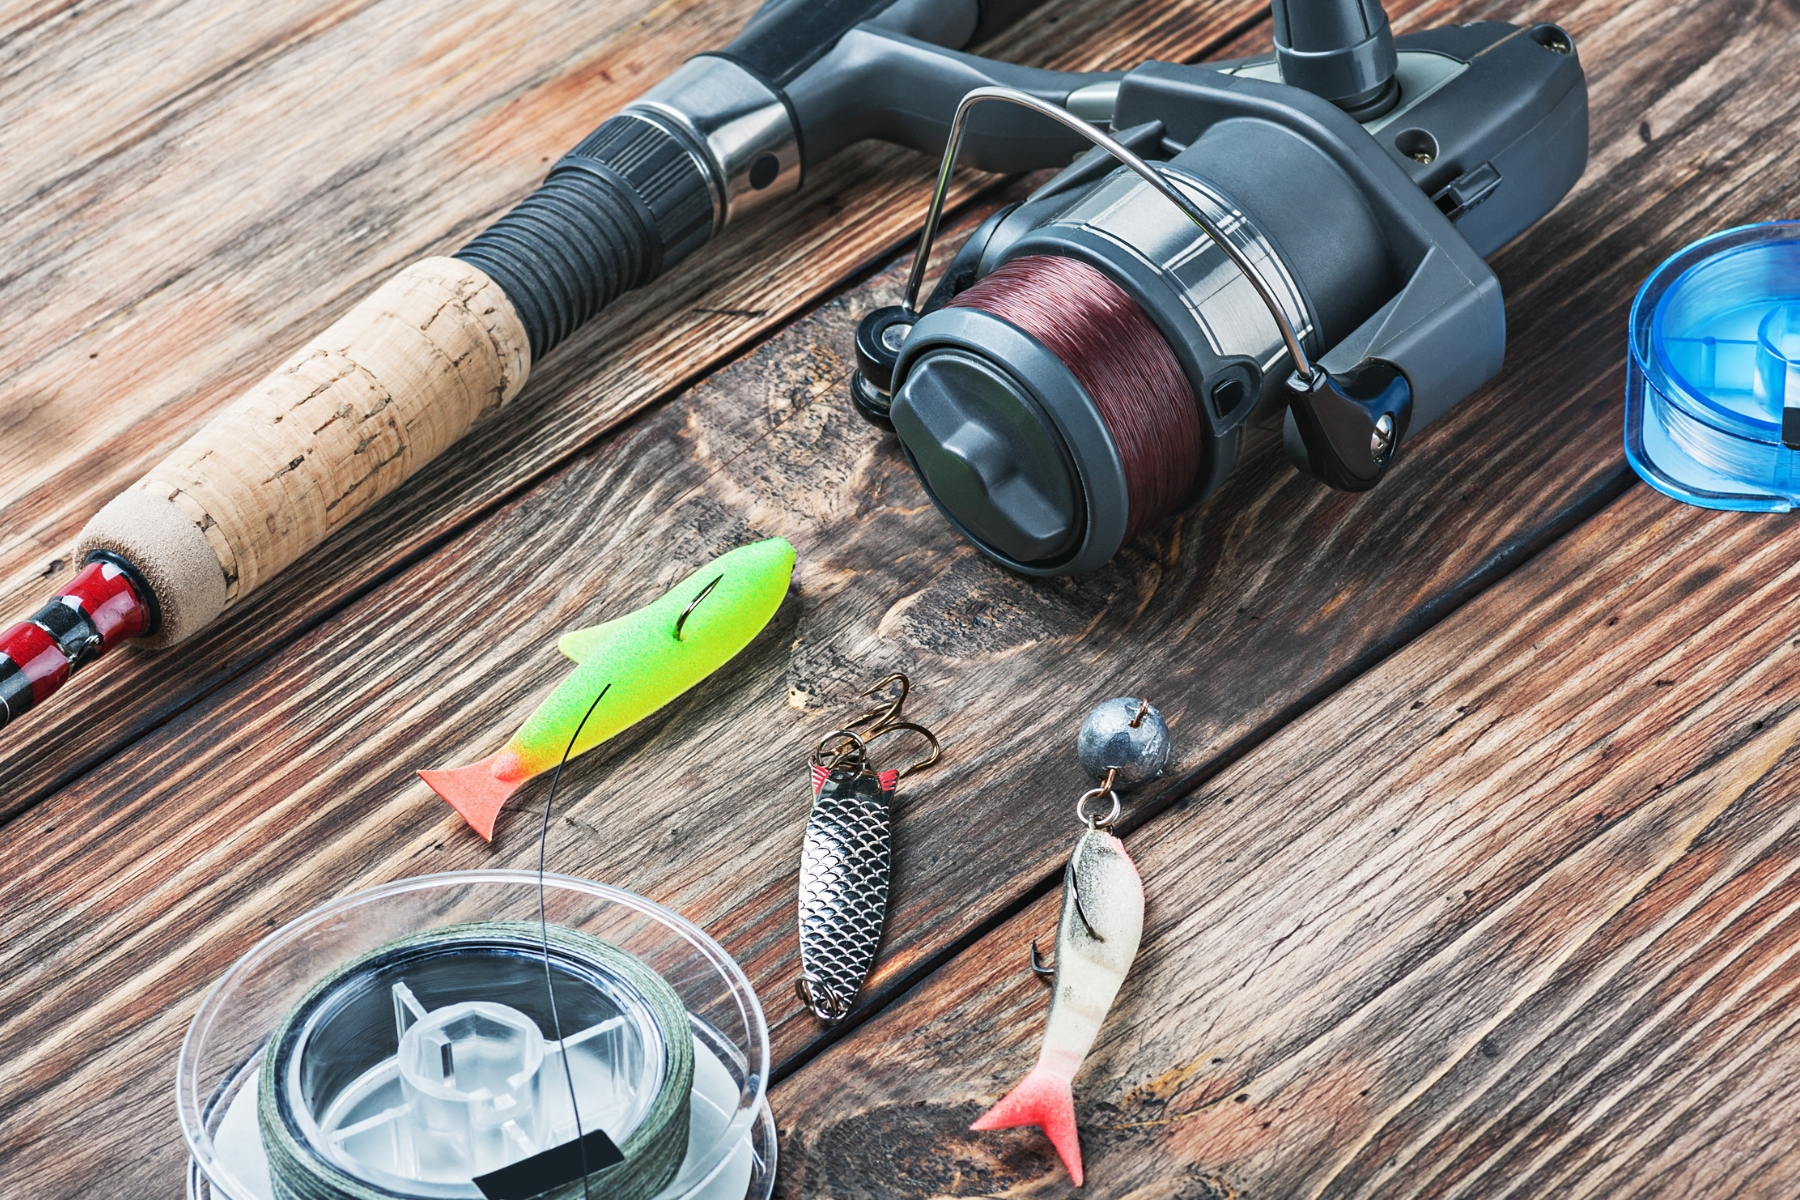 Guia definitivo de equipamentos de pesca: varas, molinetes, iscas e mais. Aprenda a escolher, usar e manter para sucesso garantido na água.